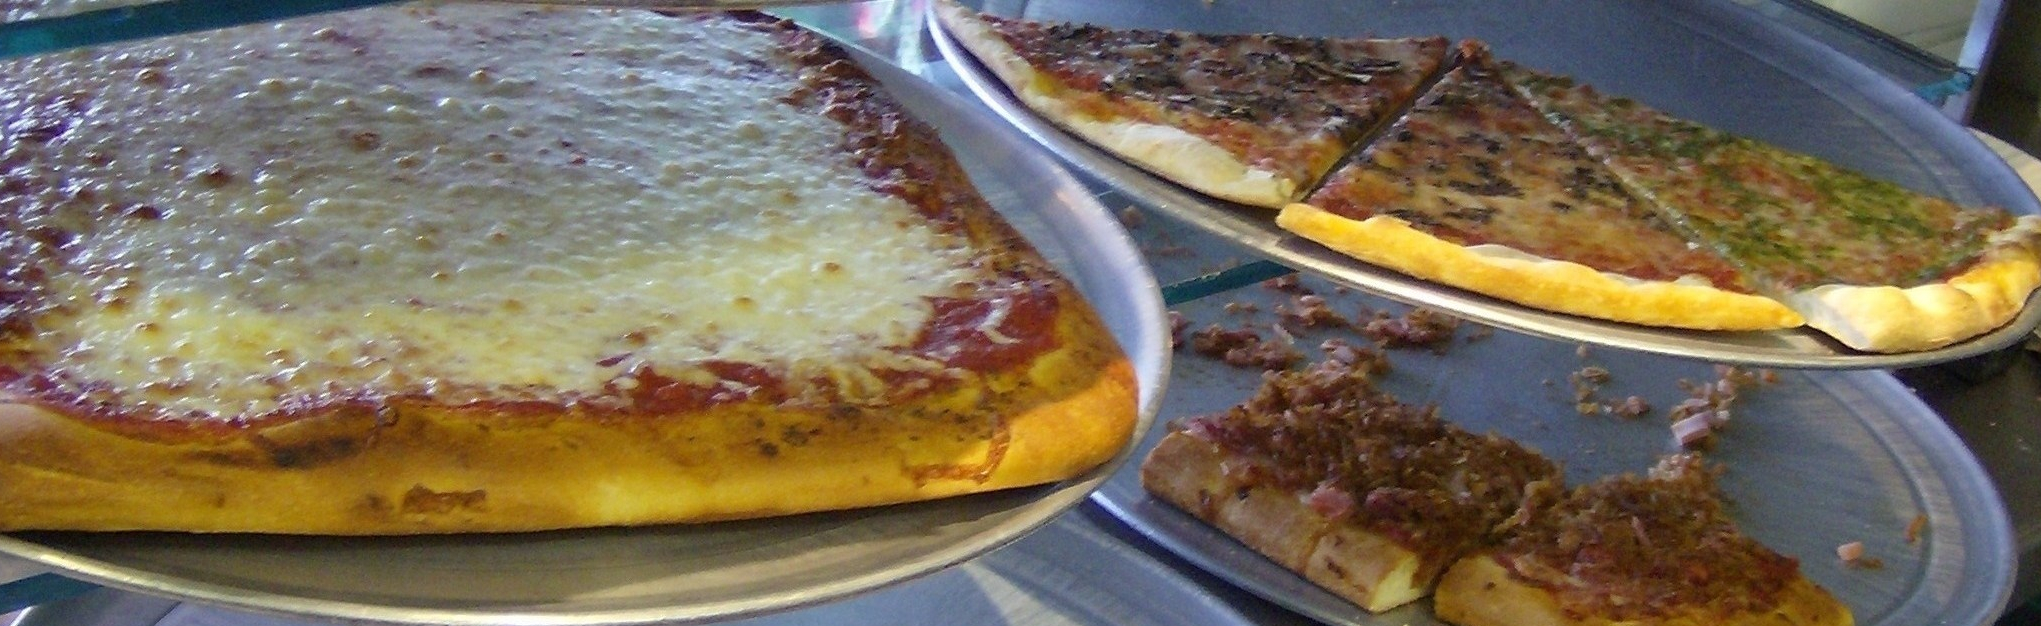 Slice of New York Pizzas